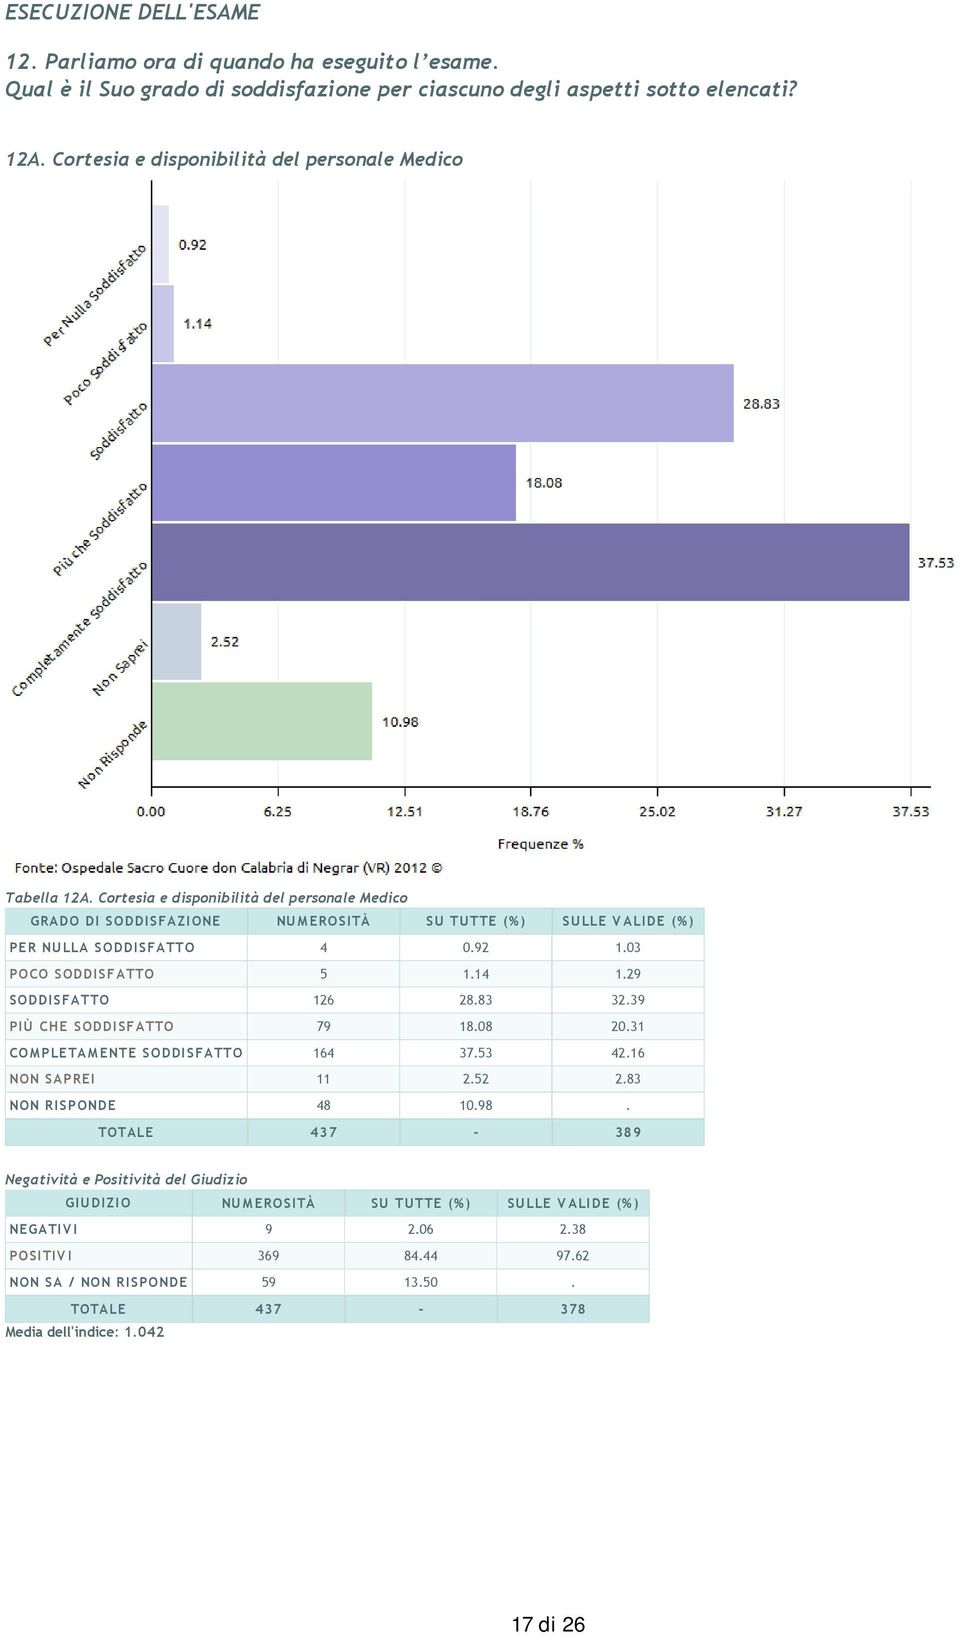 Cortesia e disponibilità del personale Medico GRADO DI SODDISFAZIONE NUMEROSITÀ SU TUTTE (%) SULLE VALIDE (%) PER NULLA SODDISFATTO 4 0.92 1.03 POCO SODDISFATTO 5 1.14 1.29 SODDISFATTO 126 28.